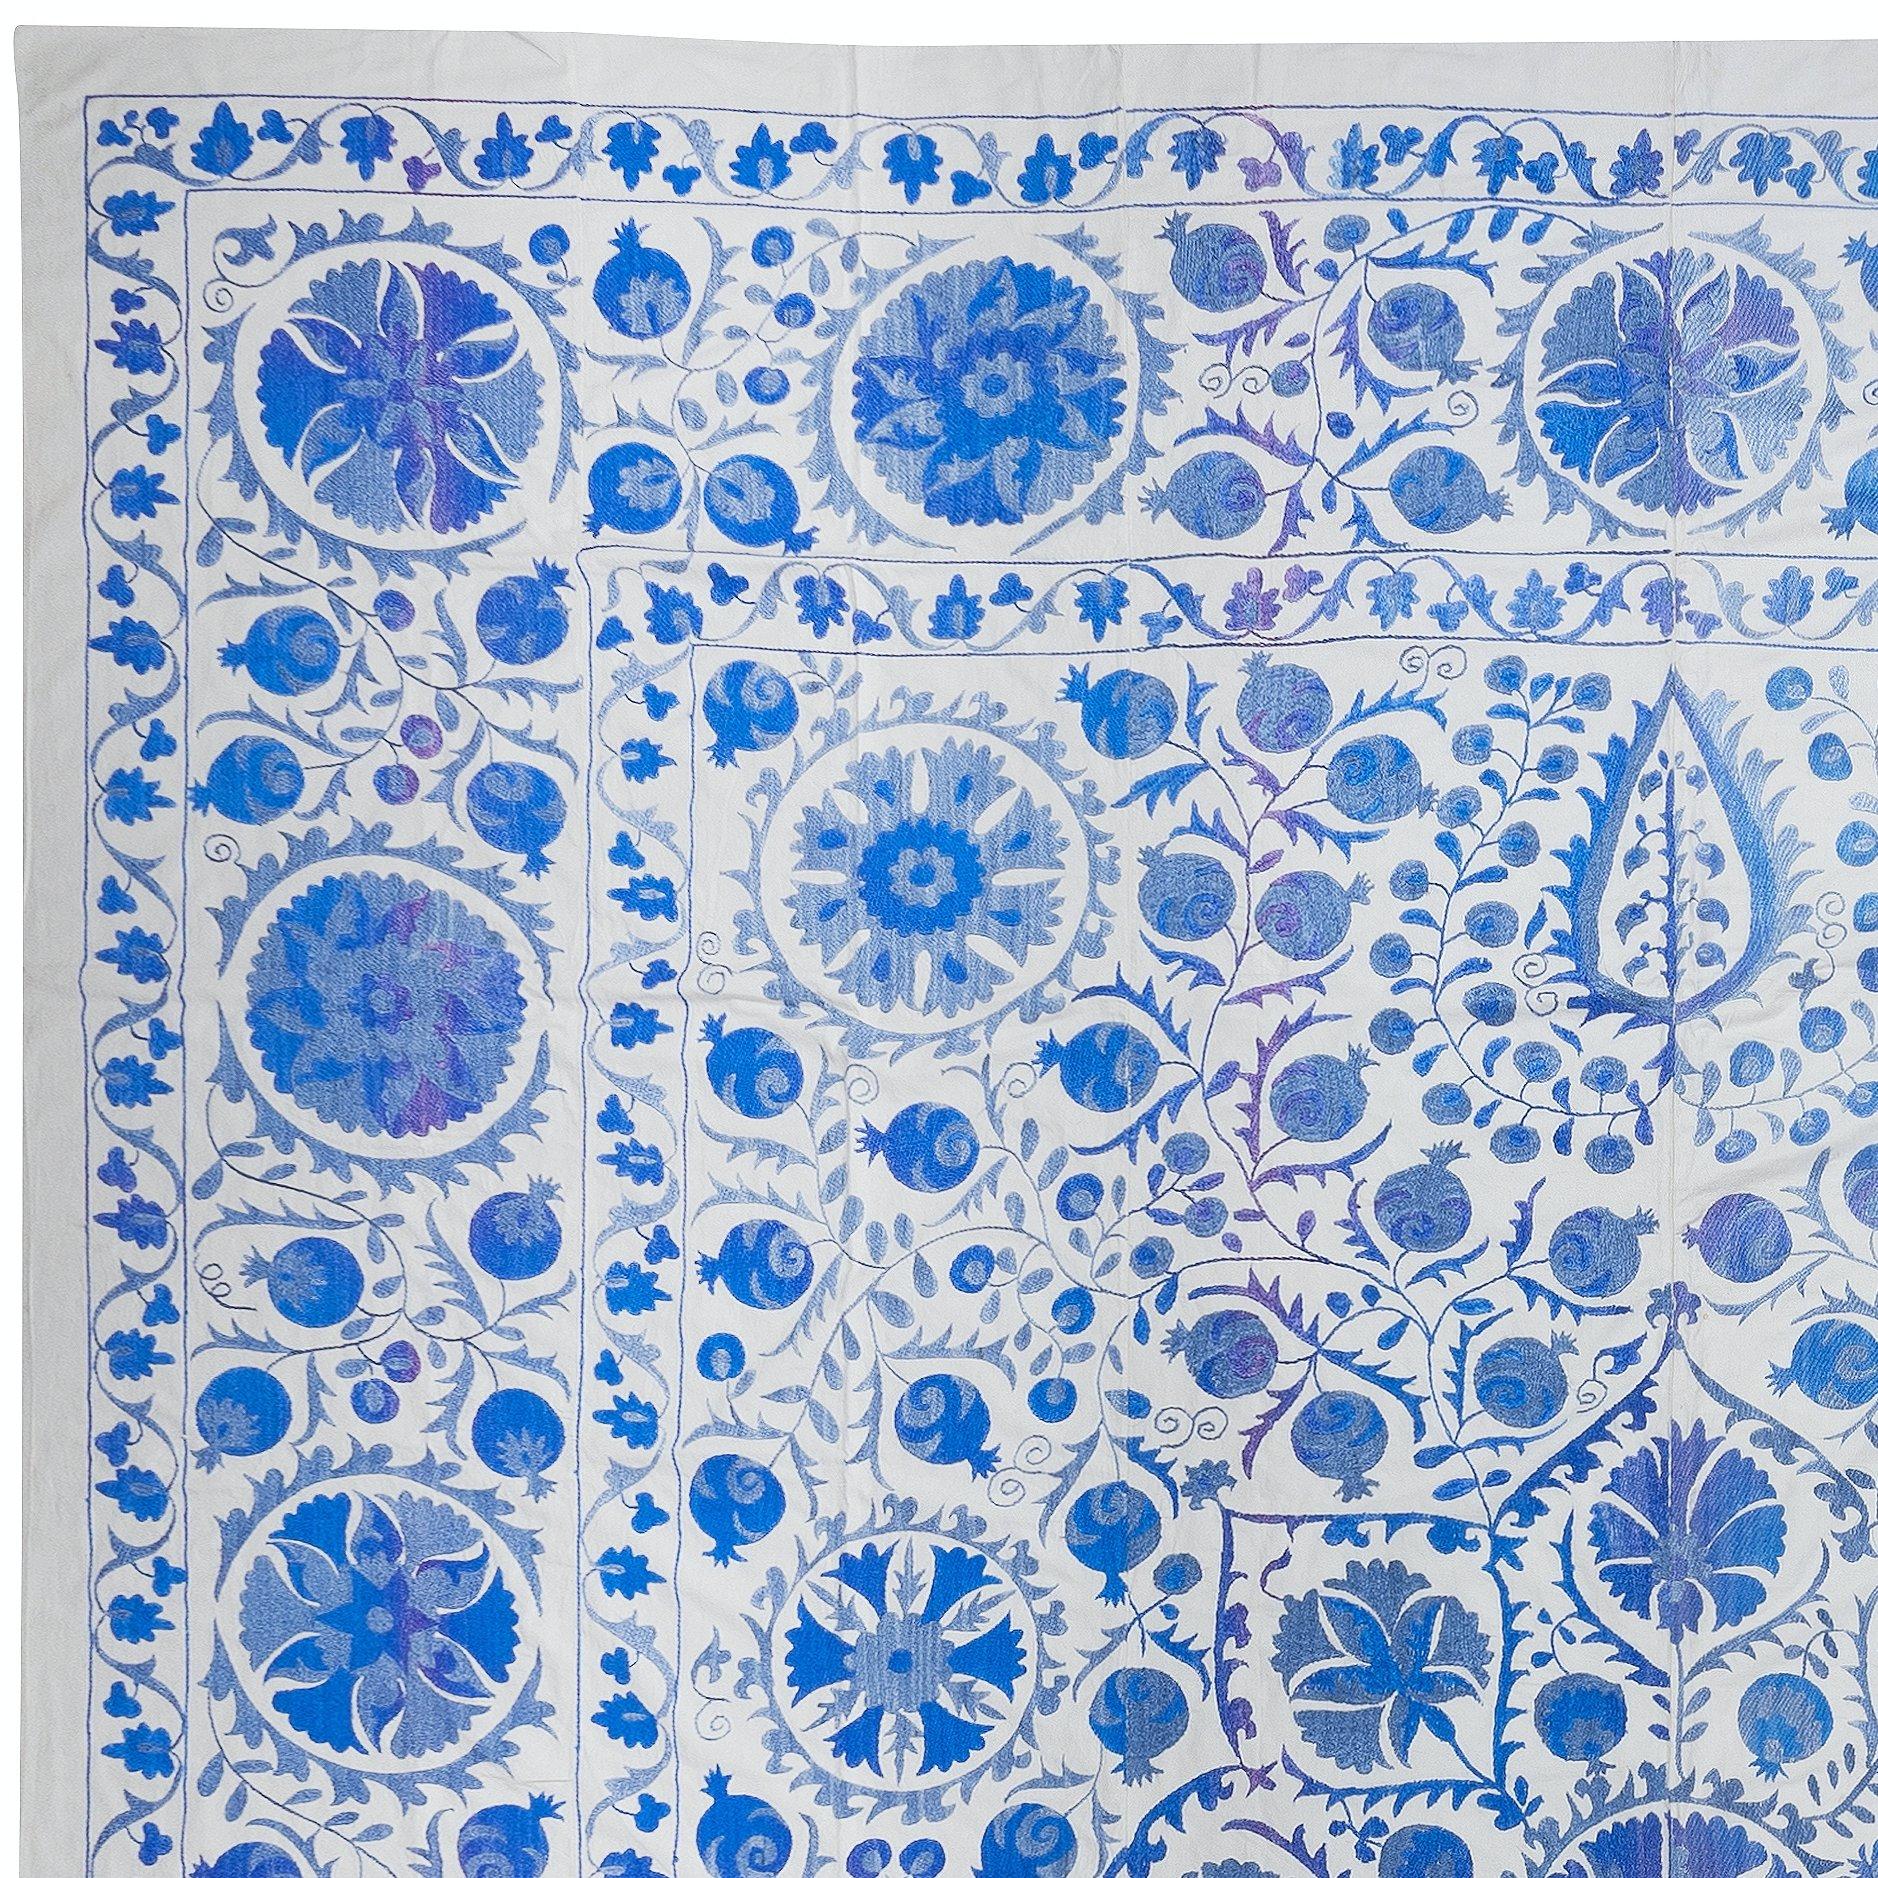 Wir stellen unseren exquisiten neuen handbestickten Suzani-Wandbehang vor, ein fesselndes Stück, das alte Handwerkskunst mit moderner Kunstfertigkeit verbindet. Dieses bestickte Tuch ist nicht nur ein Suzani-Tuch, sondern auch ein bemerkenswerter